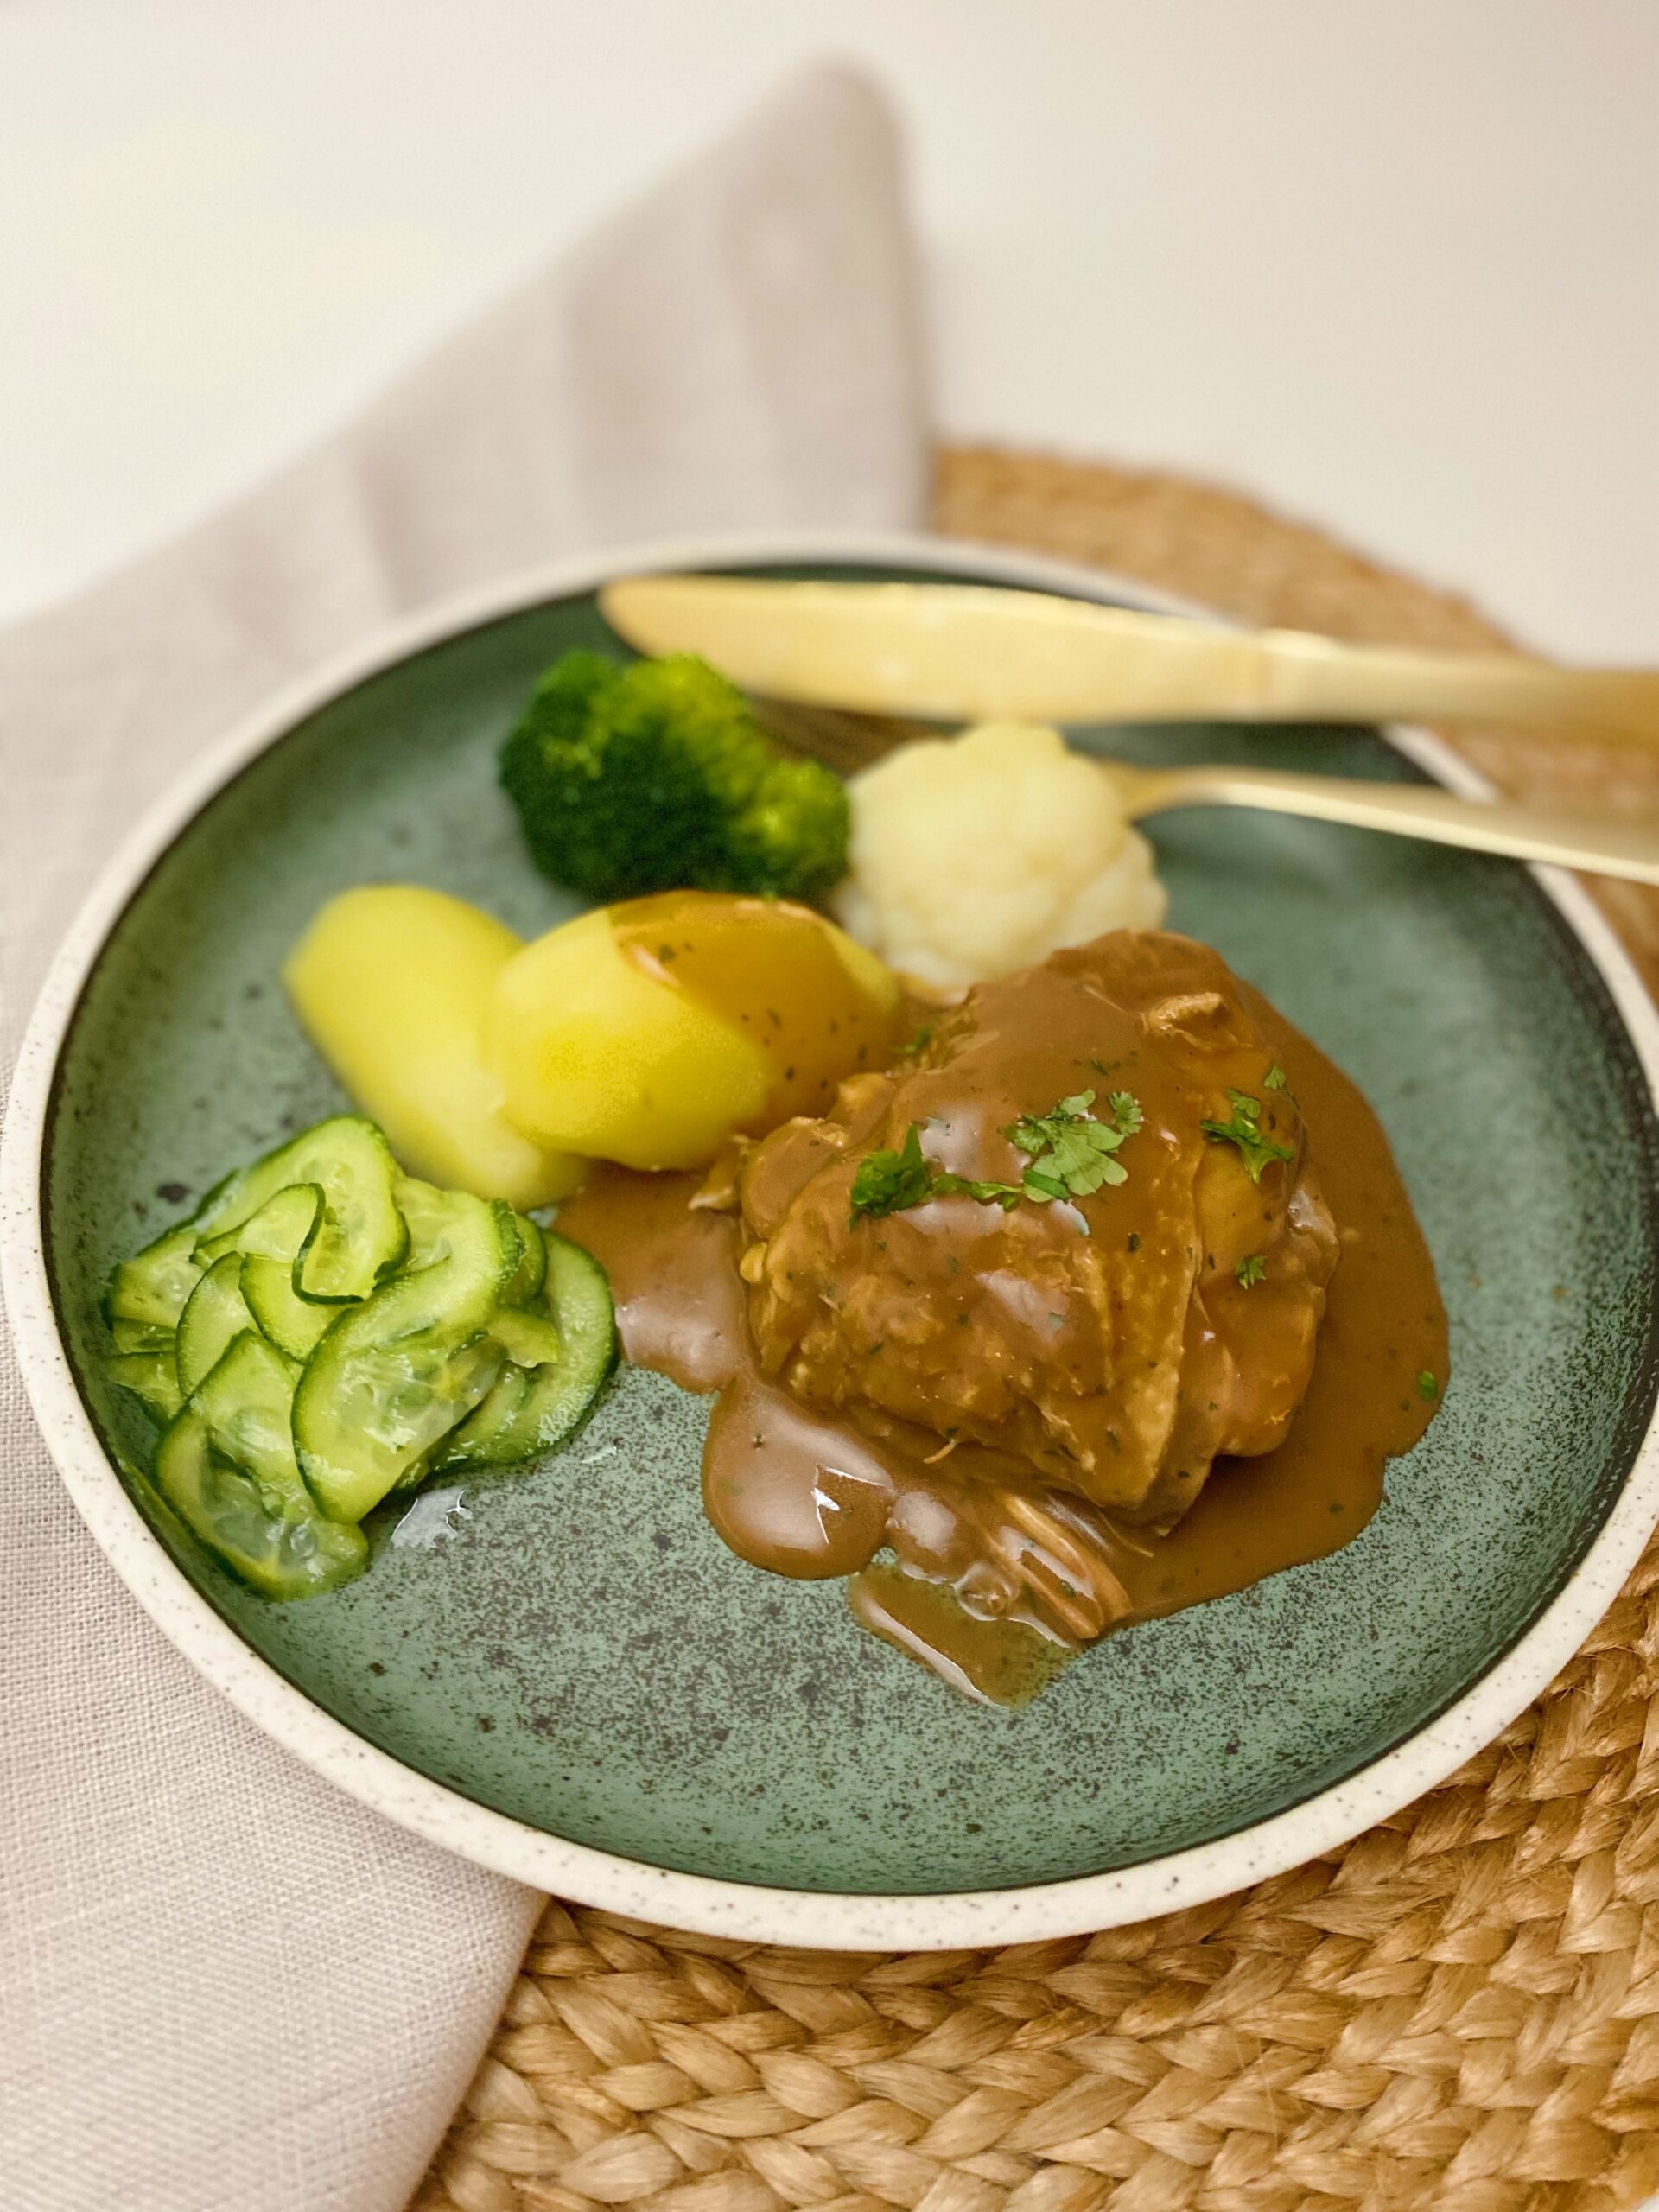 Den grydestegte kylling med sovs på serveret på en grøn tallerken. Ved siden af kyllingen ligger der kogte kartofler, blomkål og broccoli og agurkesalat.